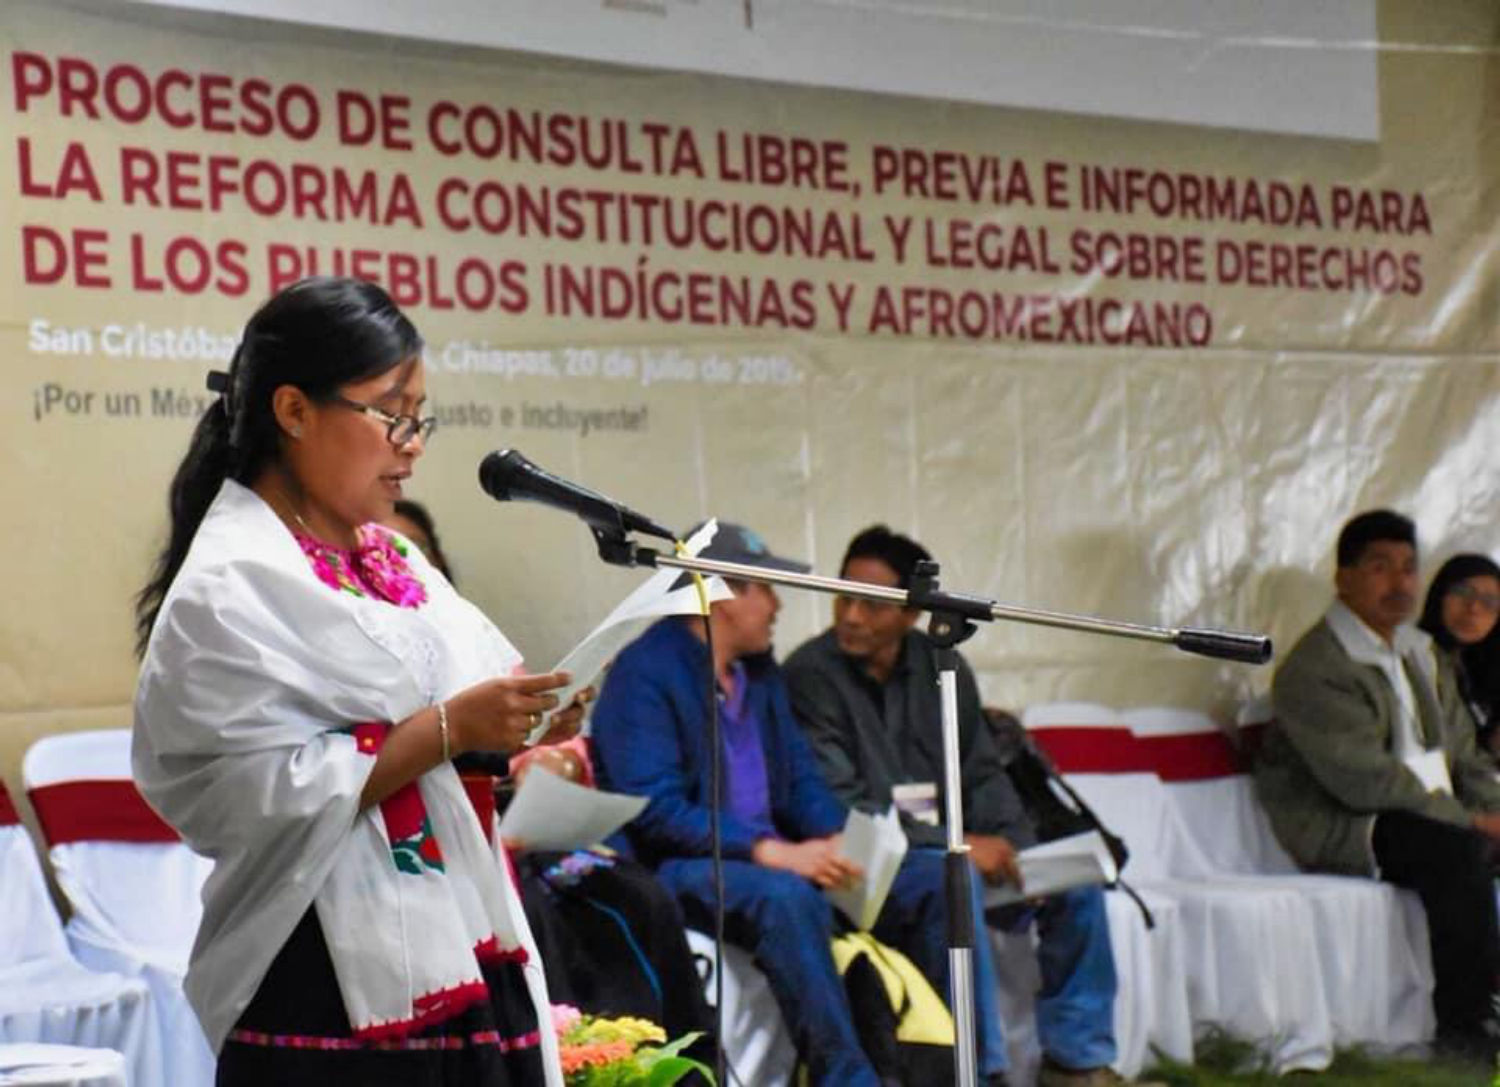 Reforma Indígena, un acto de elemental justicia social, afirman expertos en Foro Convocado por el Gobierno de México.